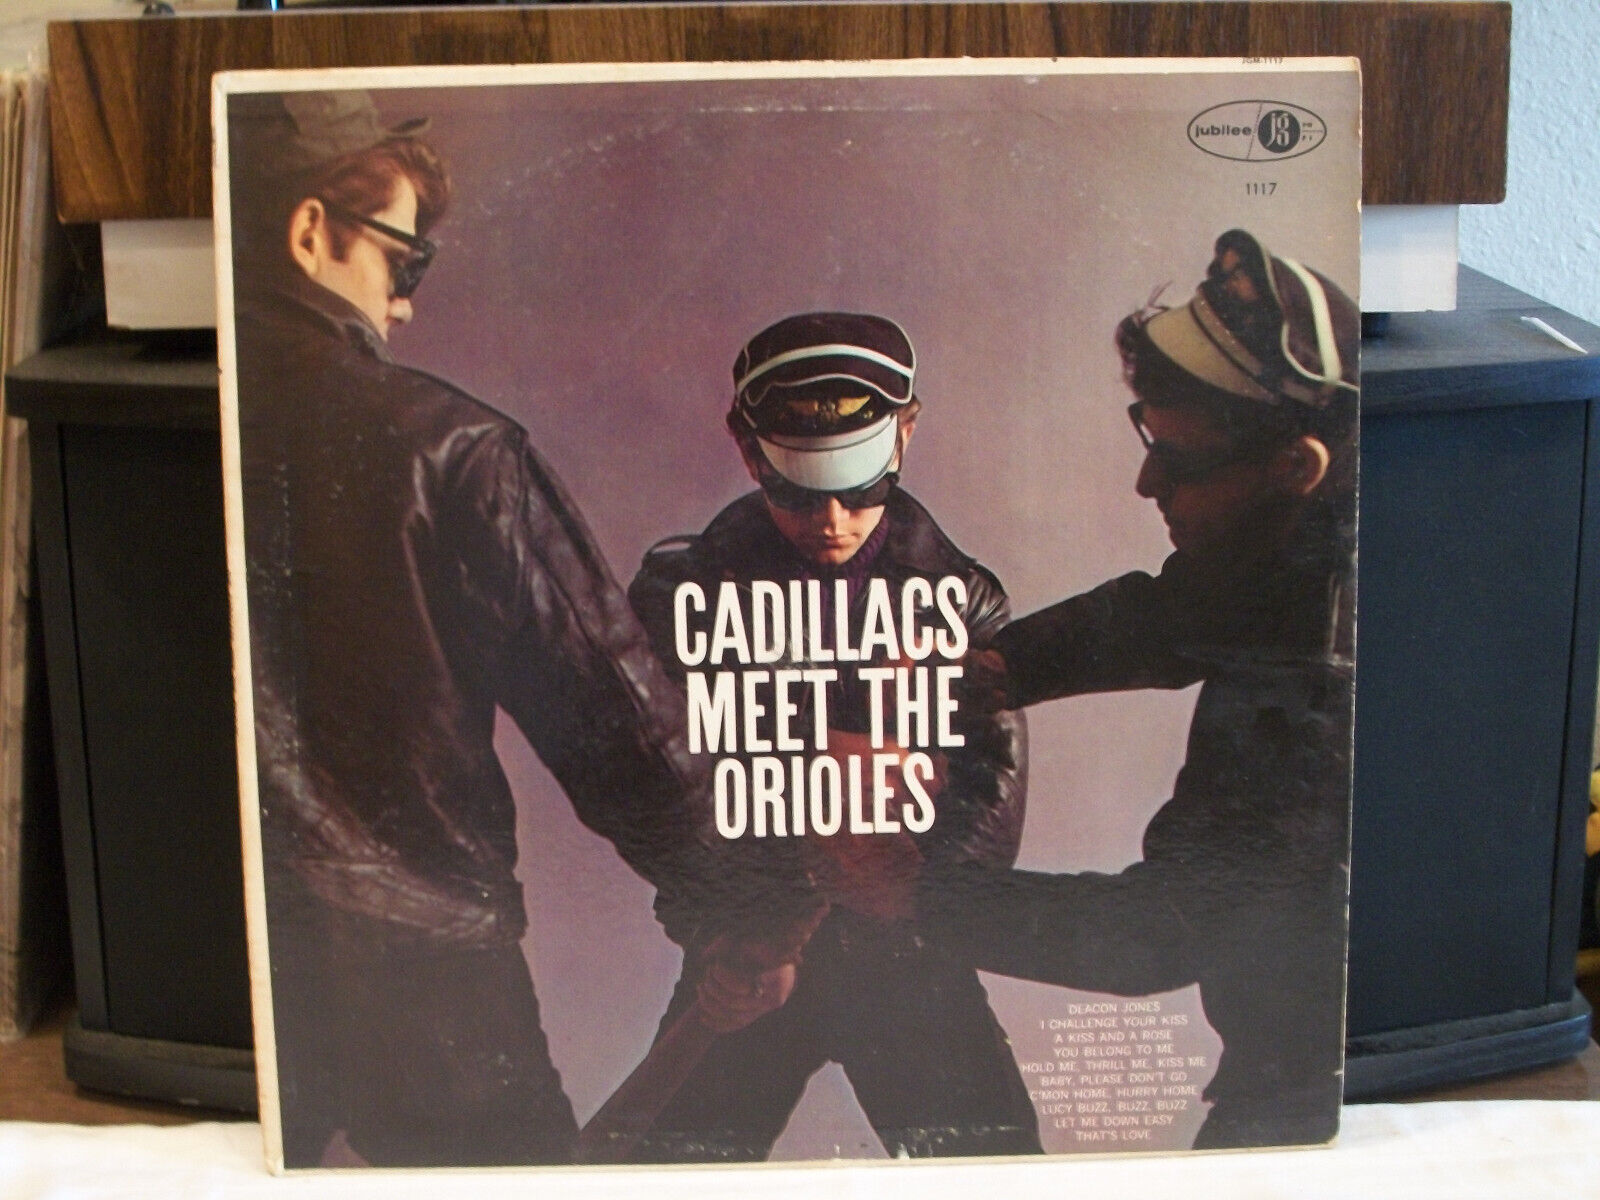 THE CADILLACS - MEET THE ORIOLES (JGM1117)  VG+ condition  VERY RARE ALBUM